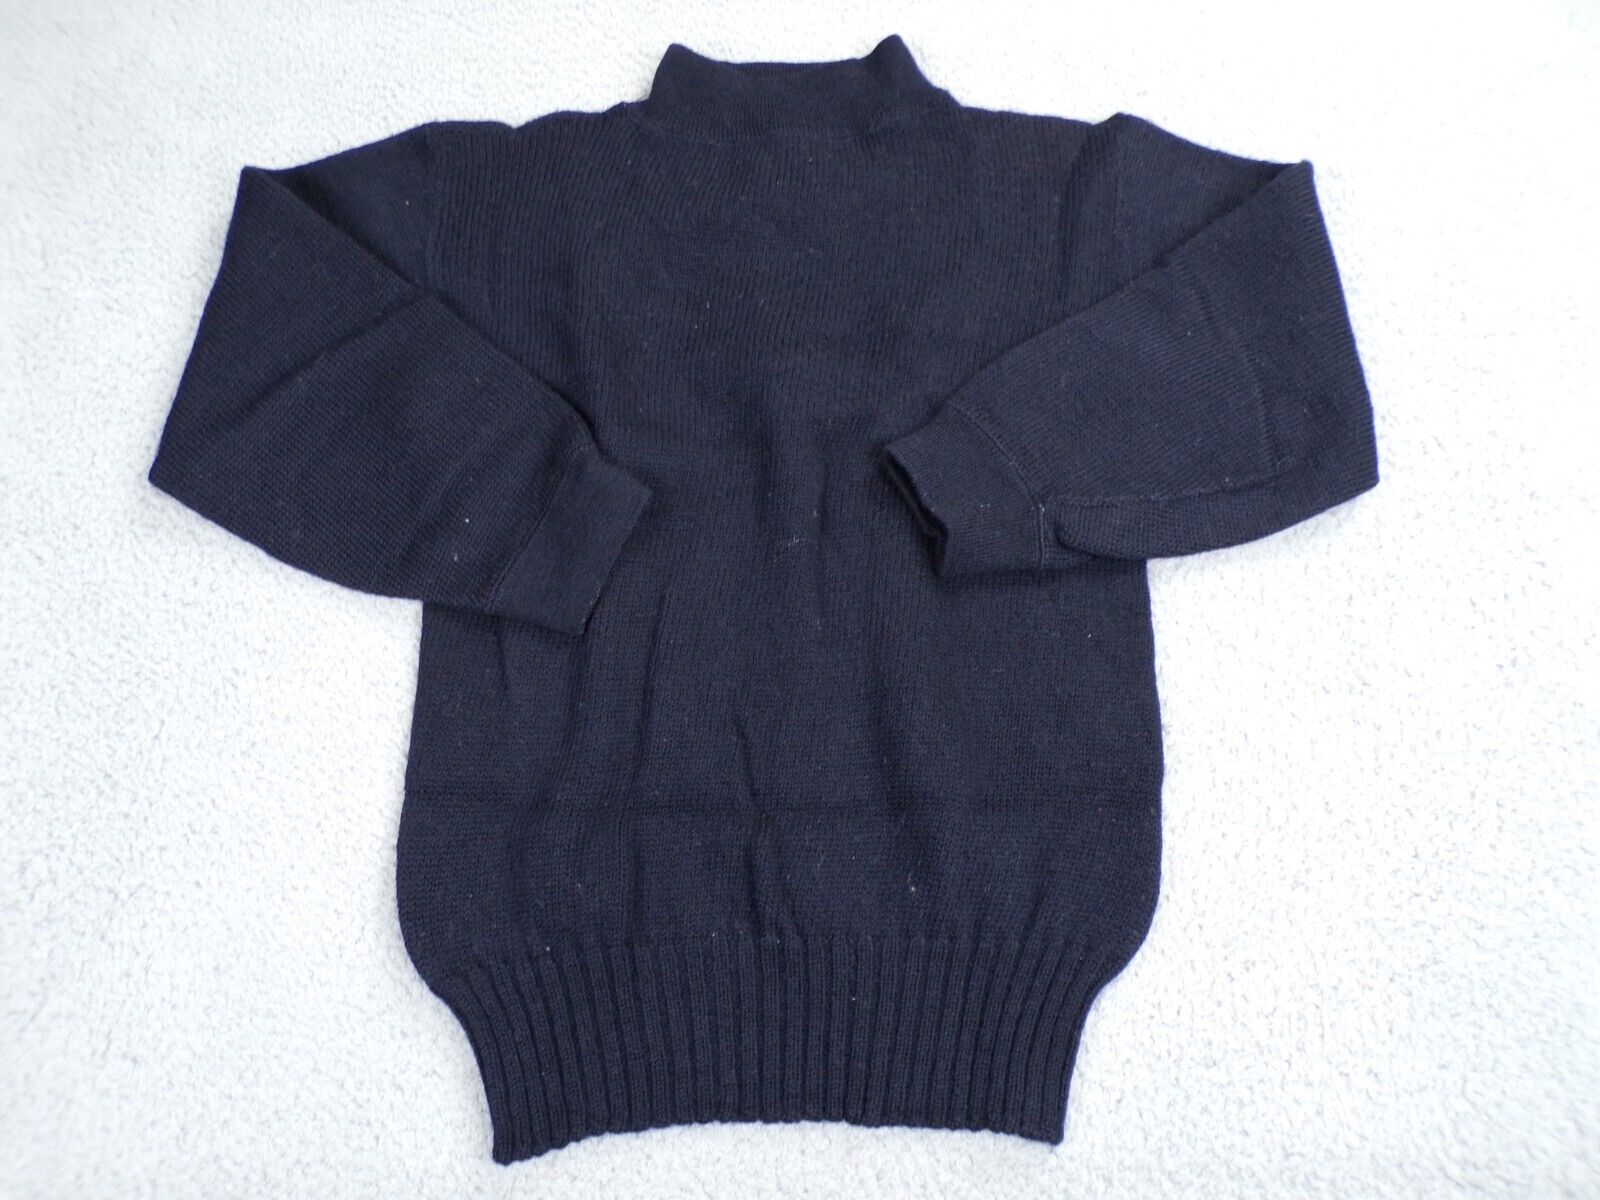 Vintage US Navy Mens Sweater Black Wool N140-62236s-38983B 40s 50s Size 38